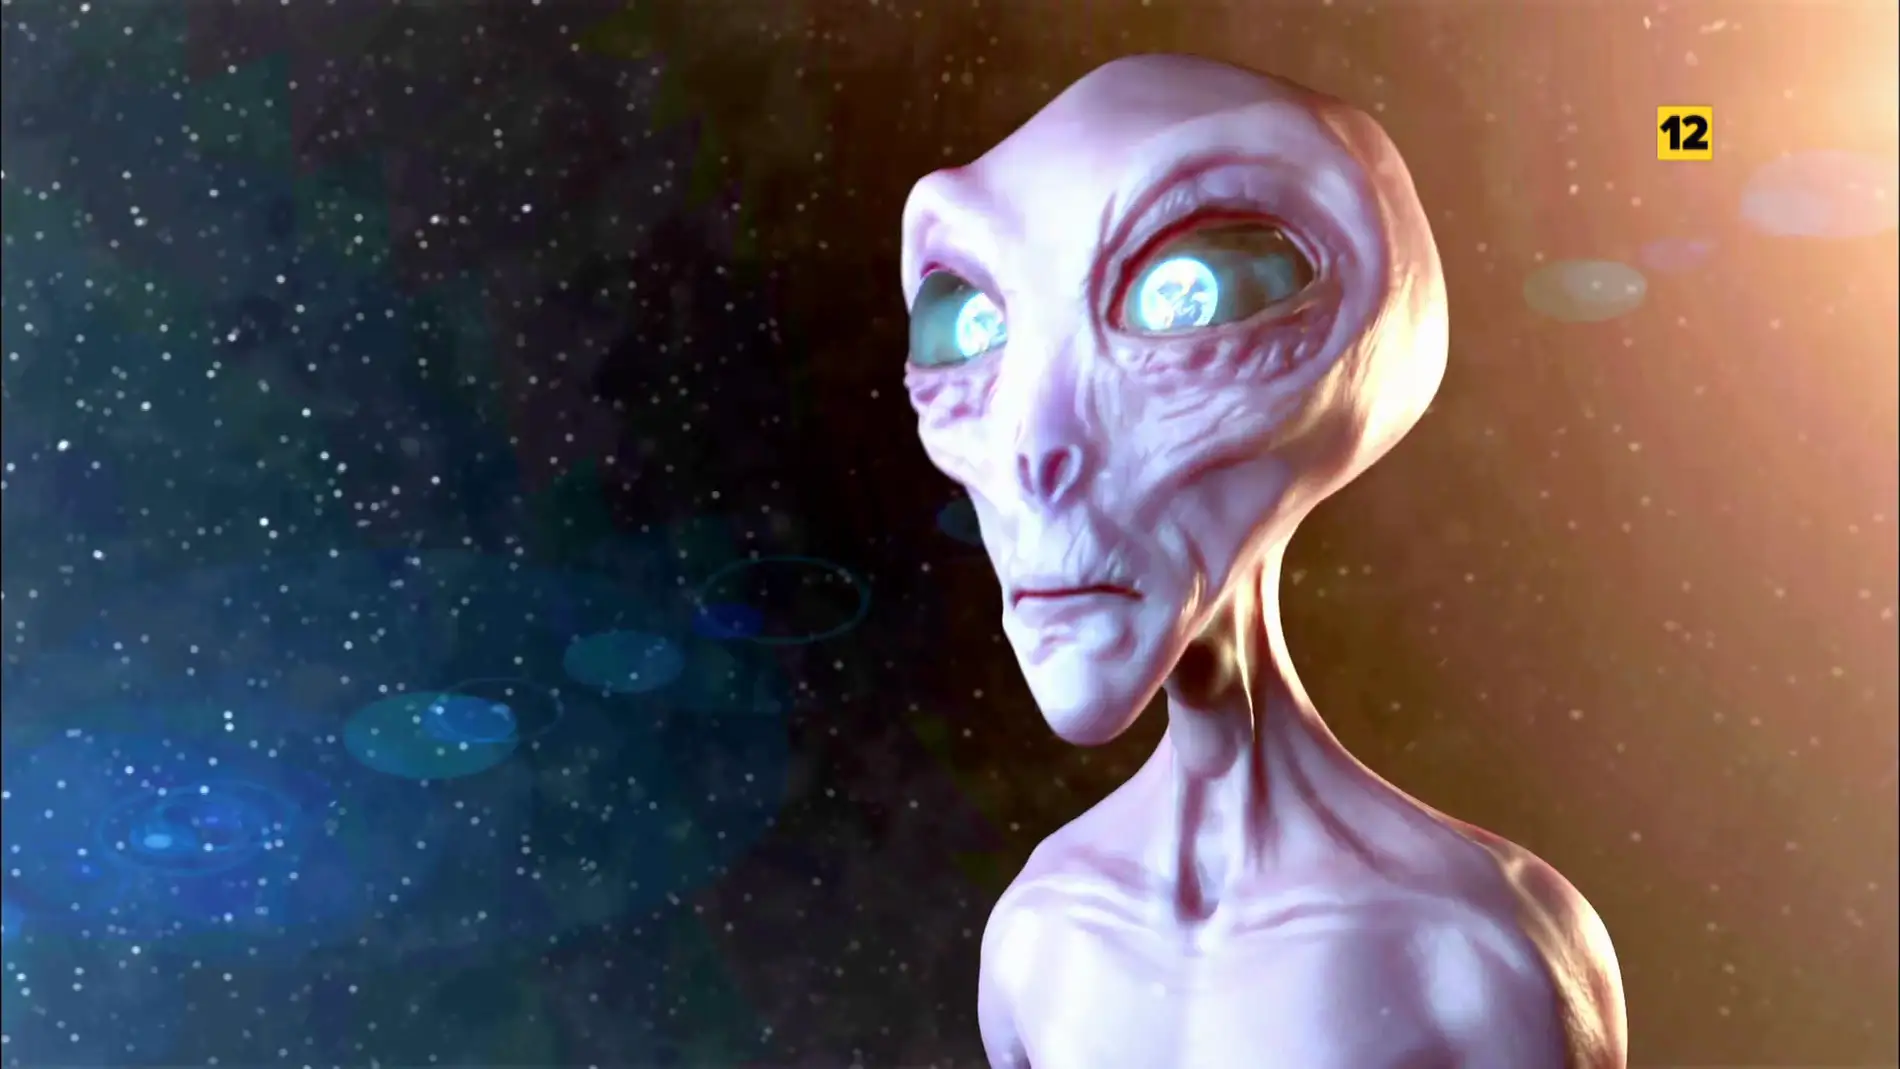 Los extraterrestres llegan a Mega | &#39;Conspiración Alien&#39;, el próximo lunes a las 22:15 estreno en Mega